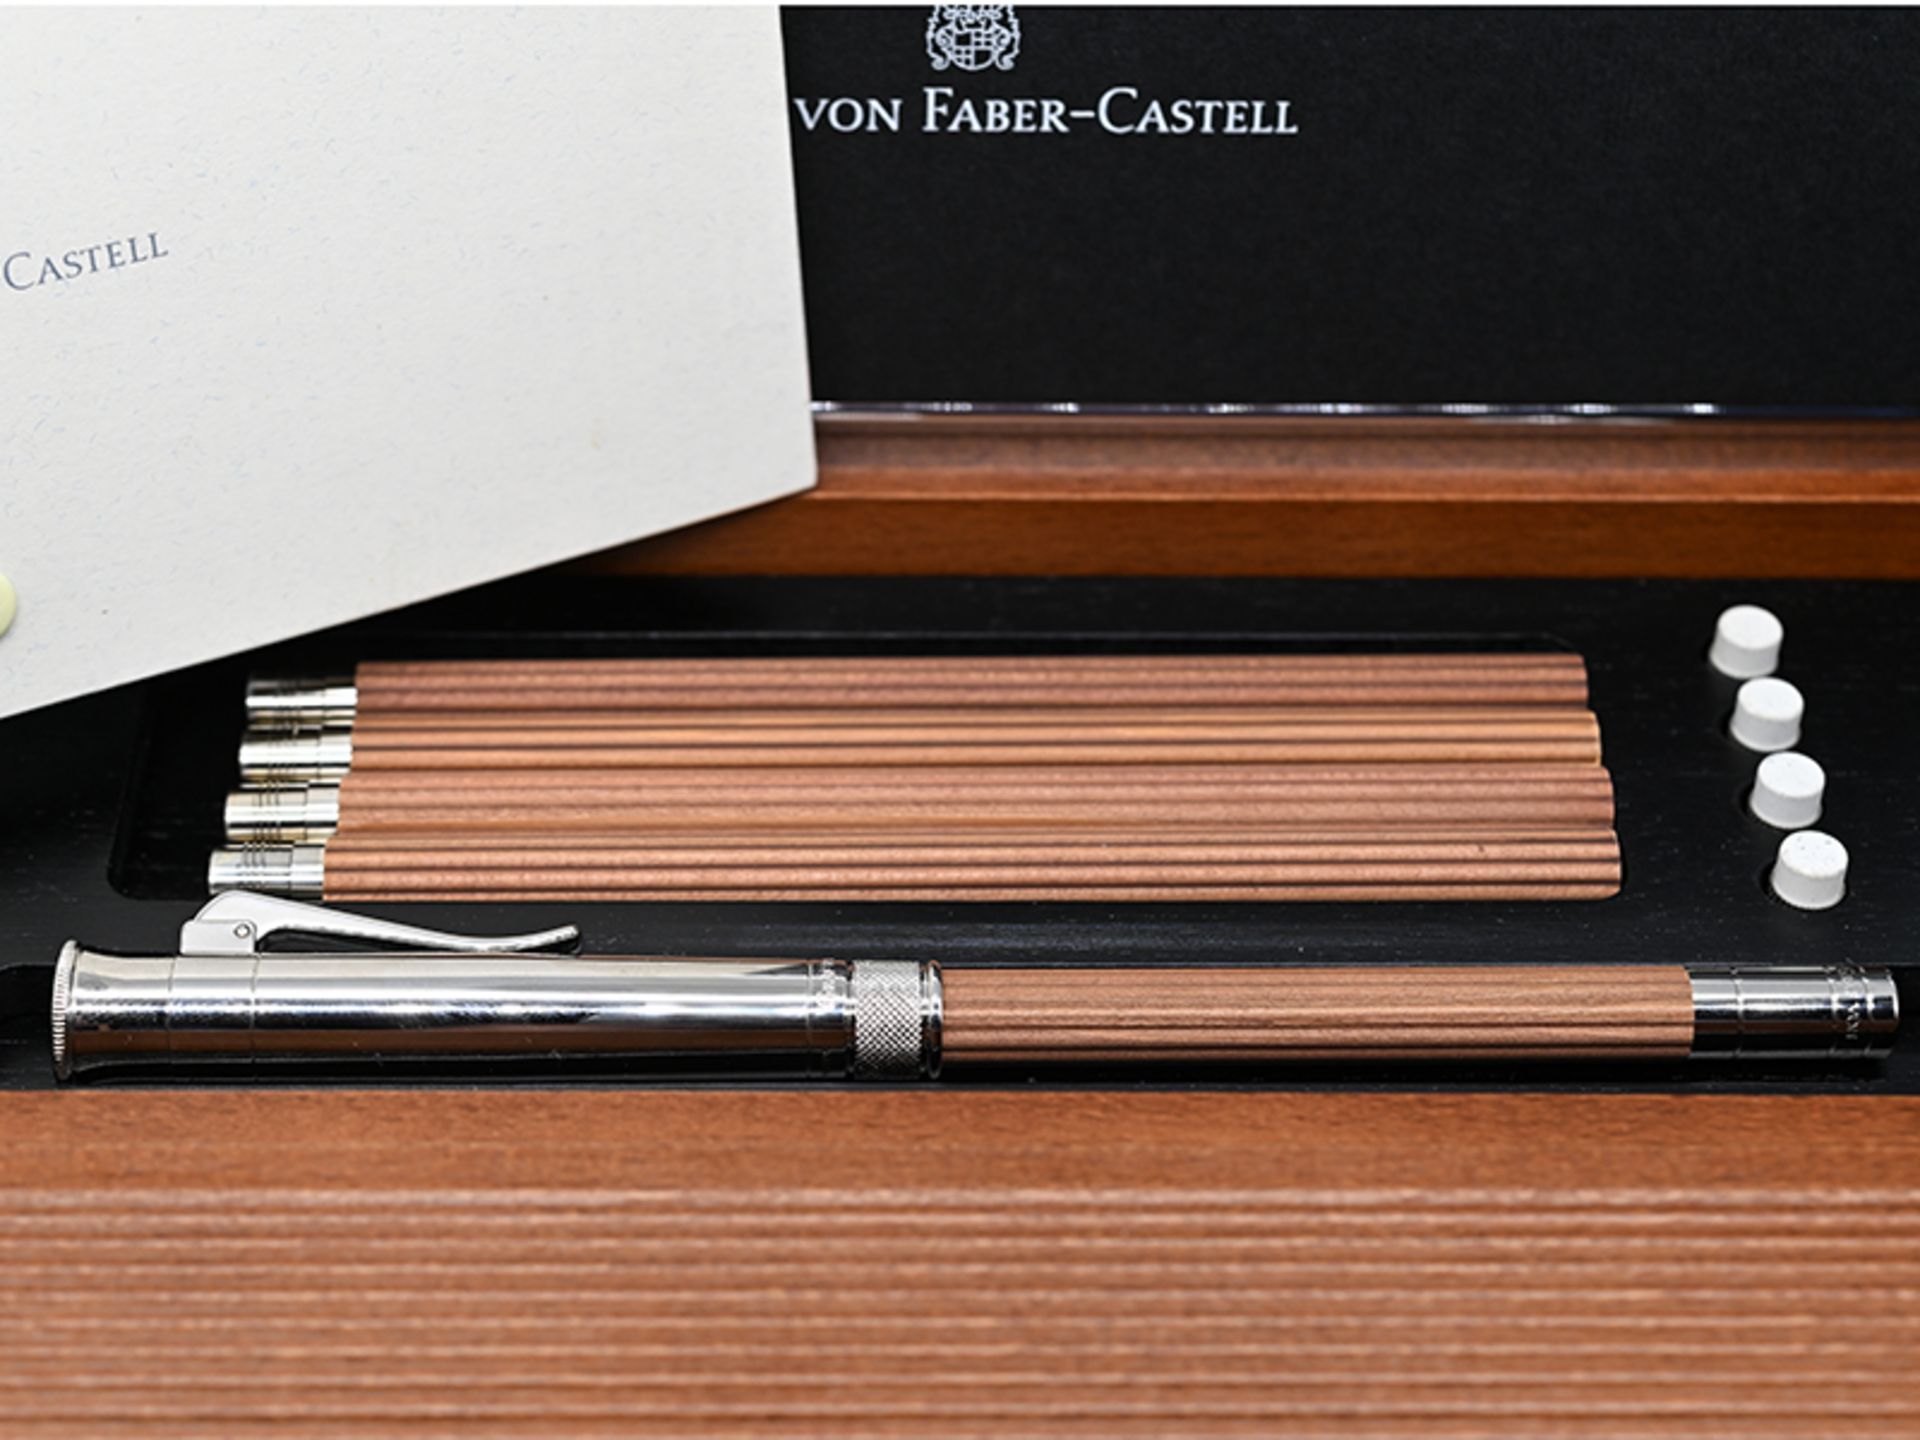 "Perfekter Bleistift" mit 4 Ersatz-Taschenbleistiften in Holzbox, Graf von Faber Castell, 20. Jh. - Image 3 of 5